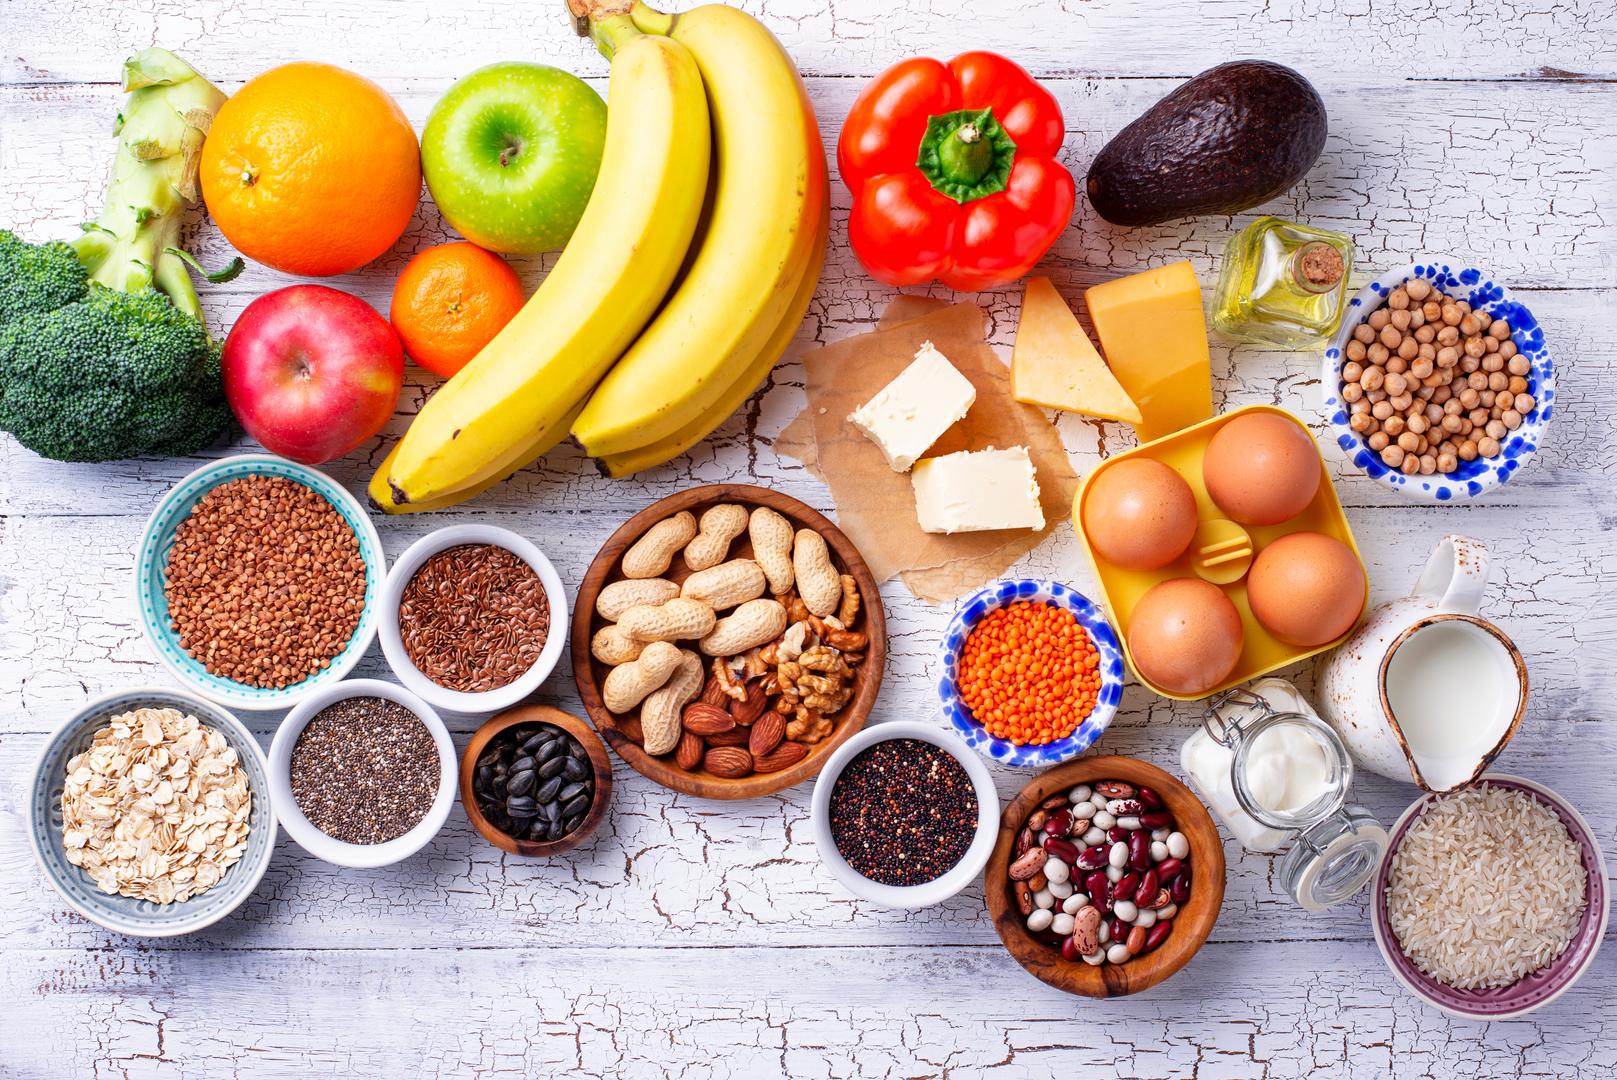 ‘Prihvaćanjem raznolikosti prehrane, osiguravamo širi spektar hranjivih tvari, njegujući rast i raznolikost crijevnih bakterija. Raznovrsni mikrobiom usko je povezan s poboljšanom probavom, boljom imunološkom funkcijom i smanjenim gastrointestinalnim i kroničnim metaboličkim poremećajima’, kaže dijetetičarka Martha Theran. ‘Samo promjenom prehrane možete promijeniti profil svoje crijevne flore u samo nekoliko dana, stoga se isplati držati puno različitog voća i povrća, zdravih proteina i masti u svakodnevnoj prehrani’, kaže Vaske.